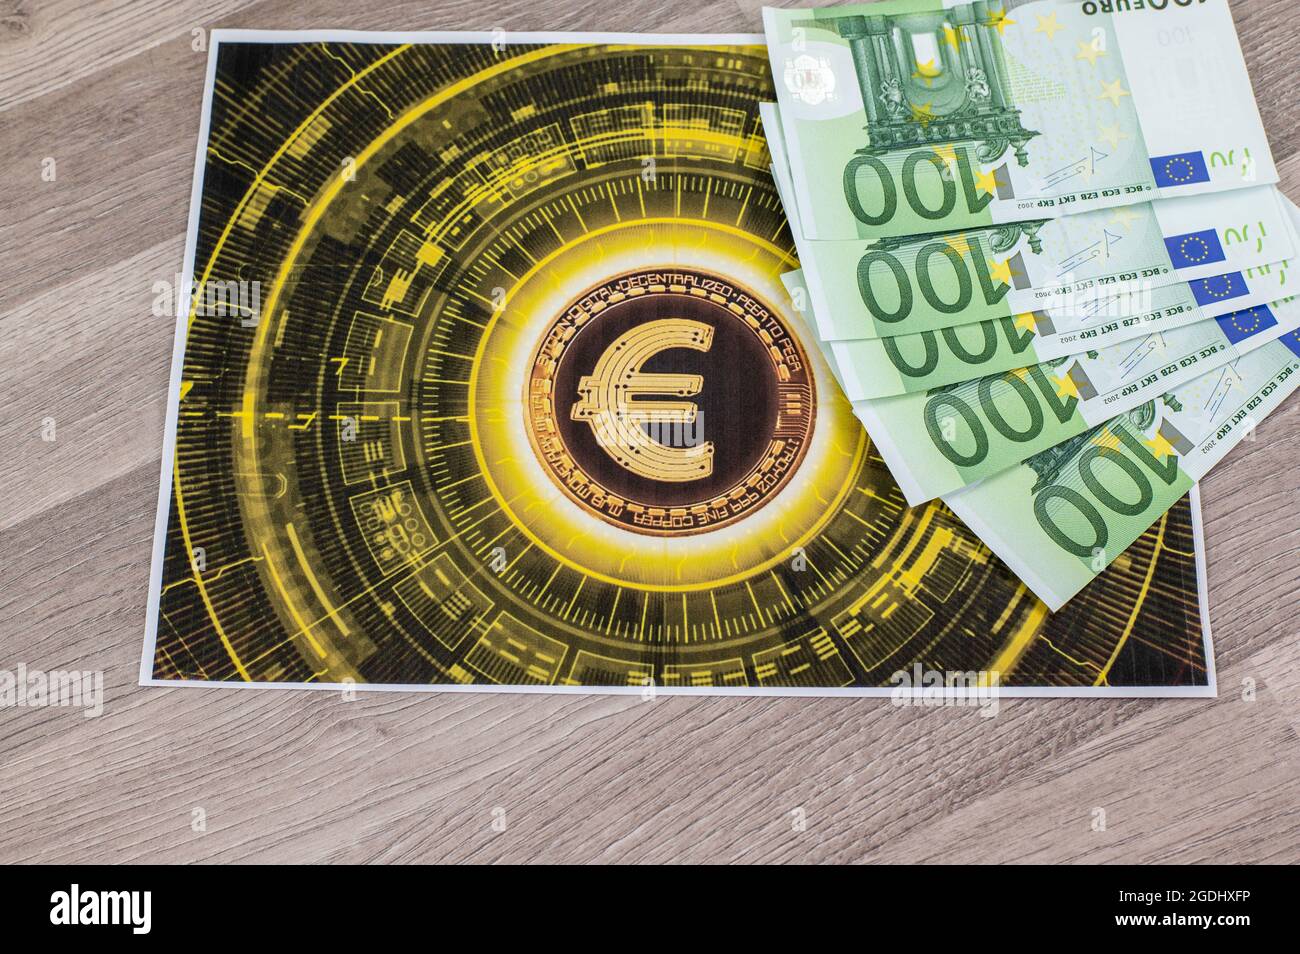 100 billets en euros et tepetino avec symbole en euros sur table en bois Banque D'Images